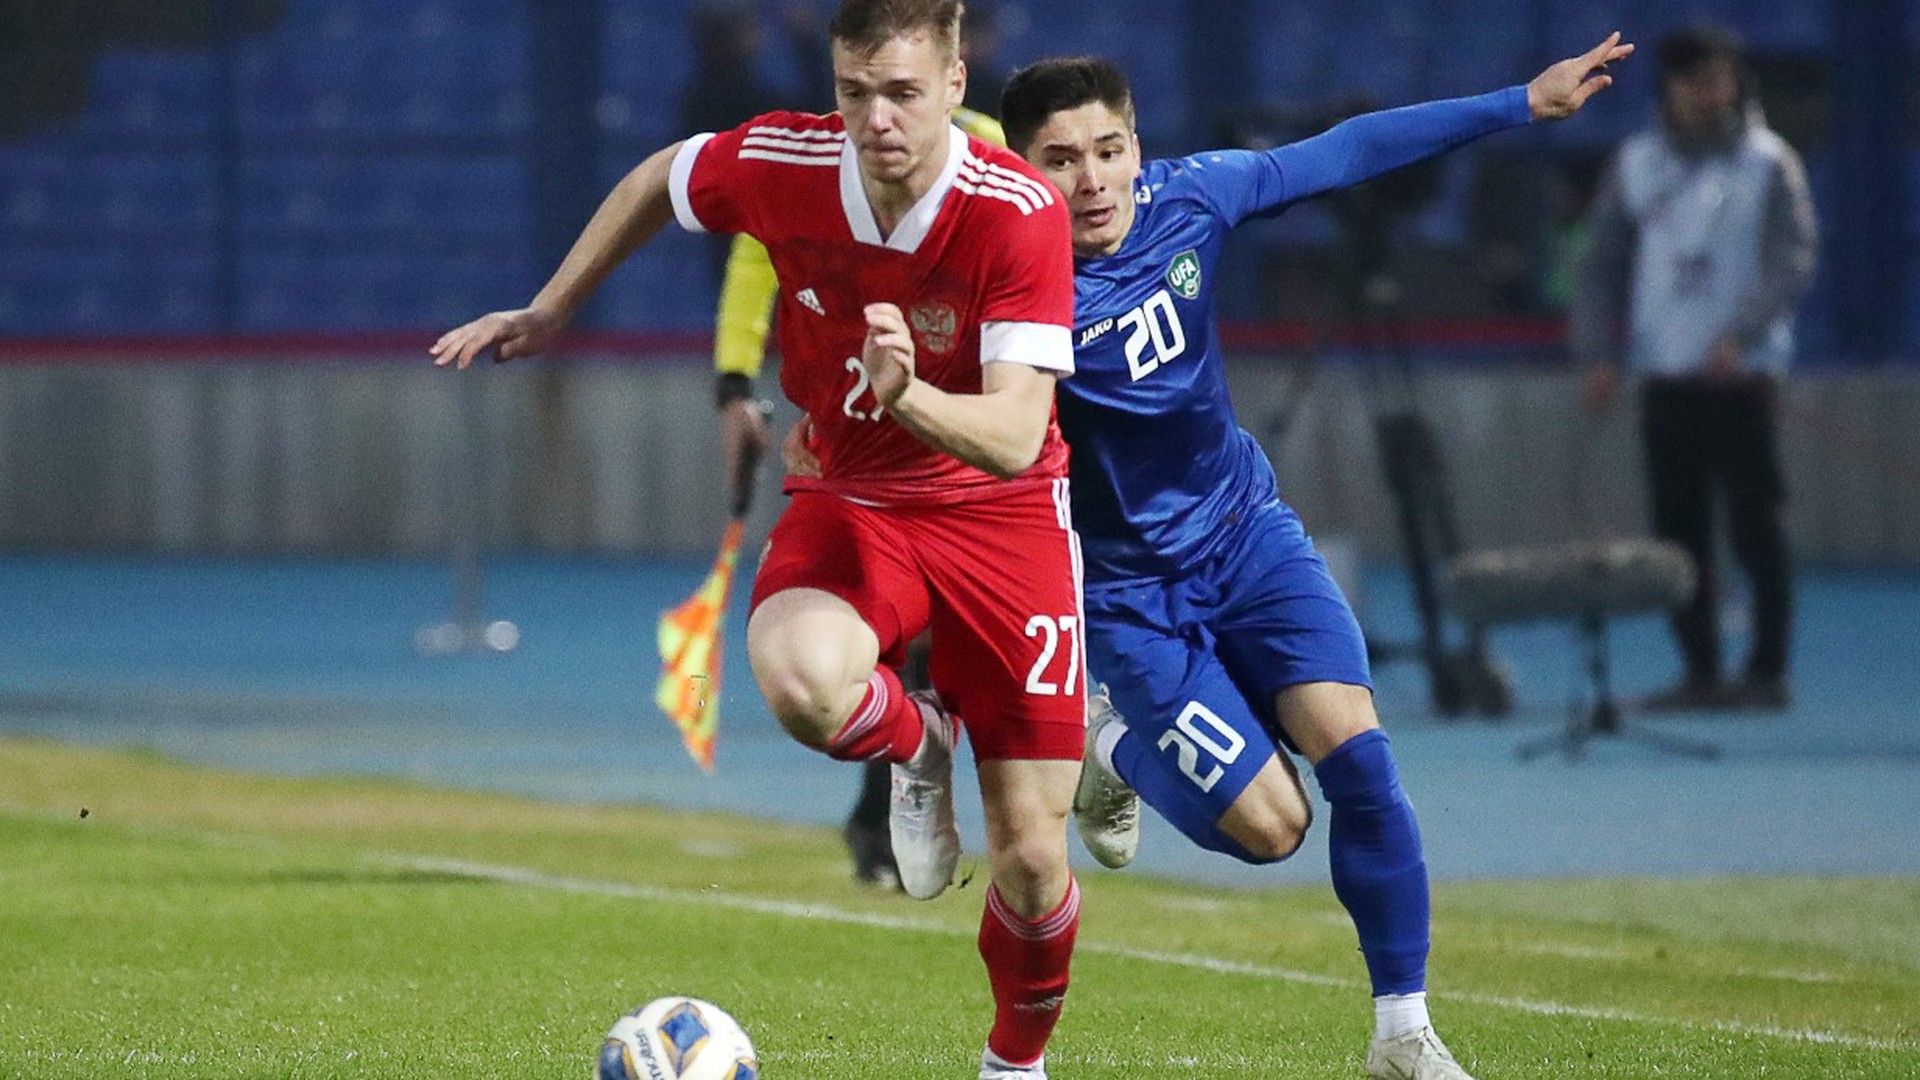 Сборная России по футболу сыграла вничью с Узбекистаном